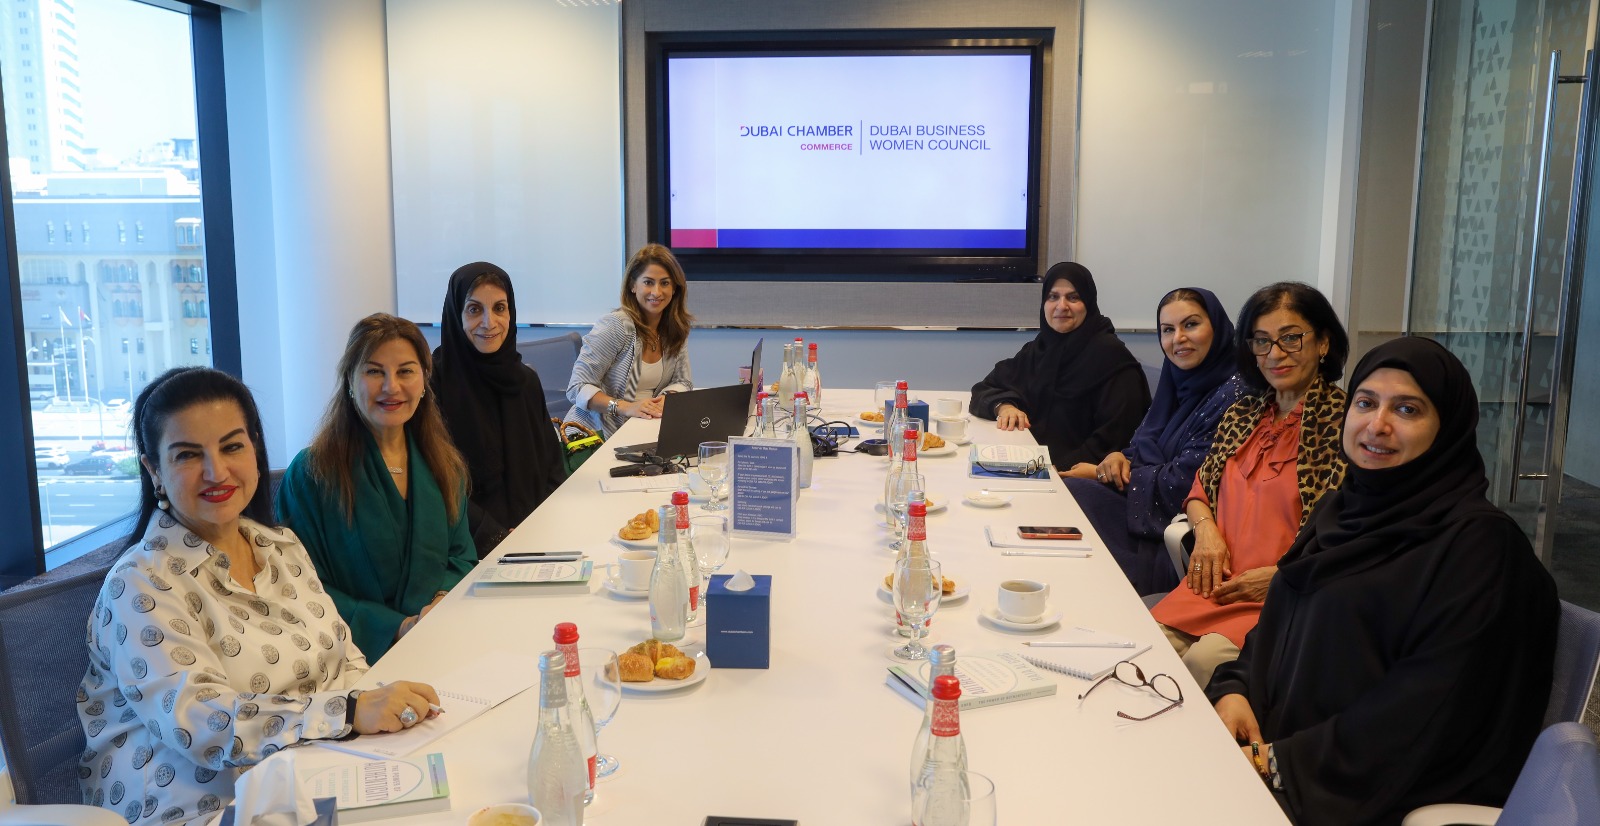 مجلس سيدات أعمال دبي يبحث مشاريع تعزيز دور المرأة بمسيرة التنمية